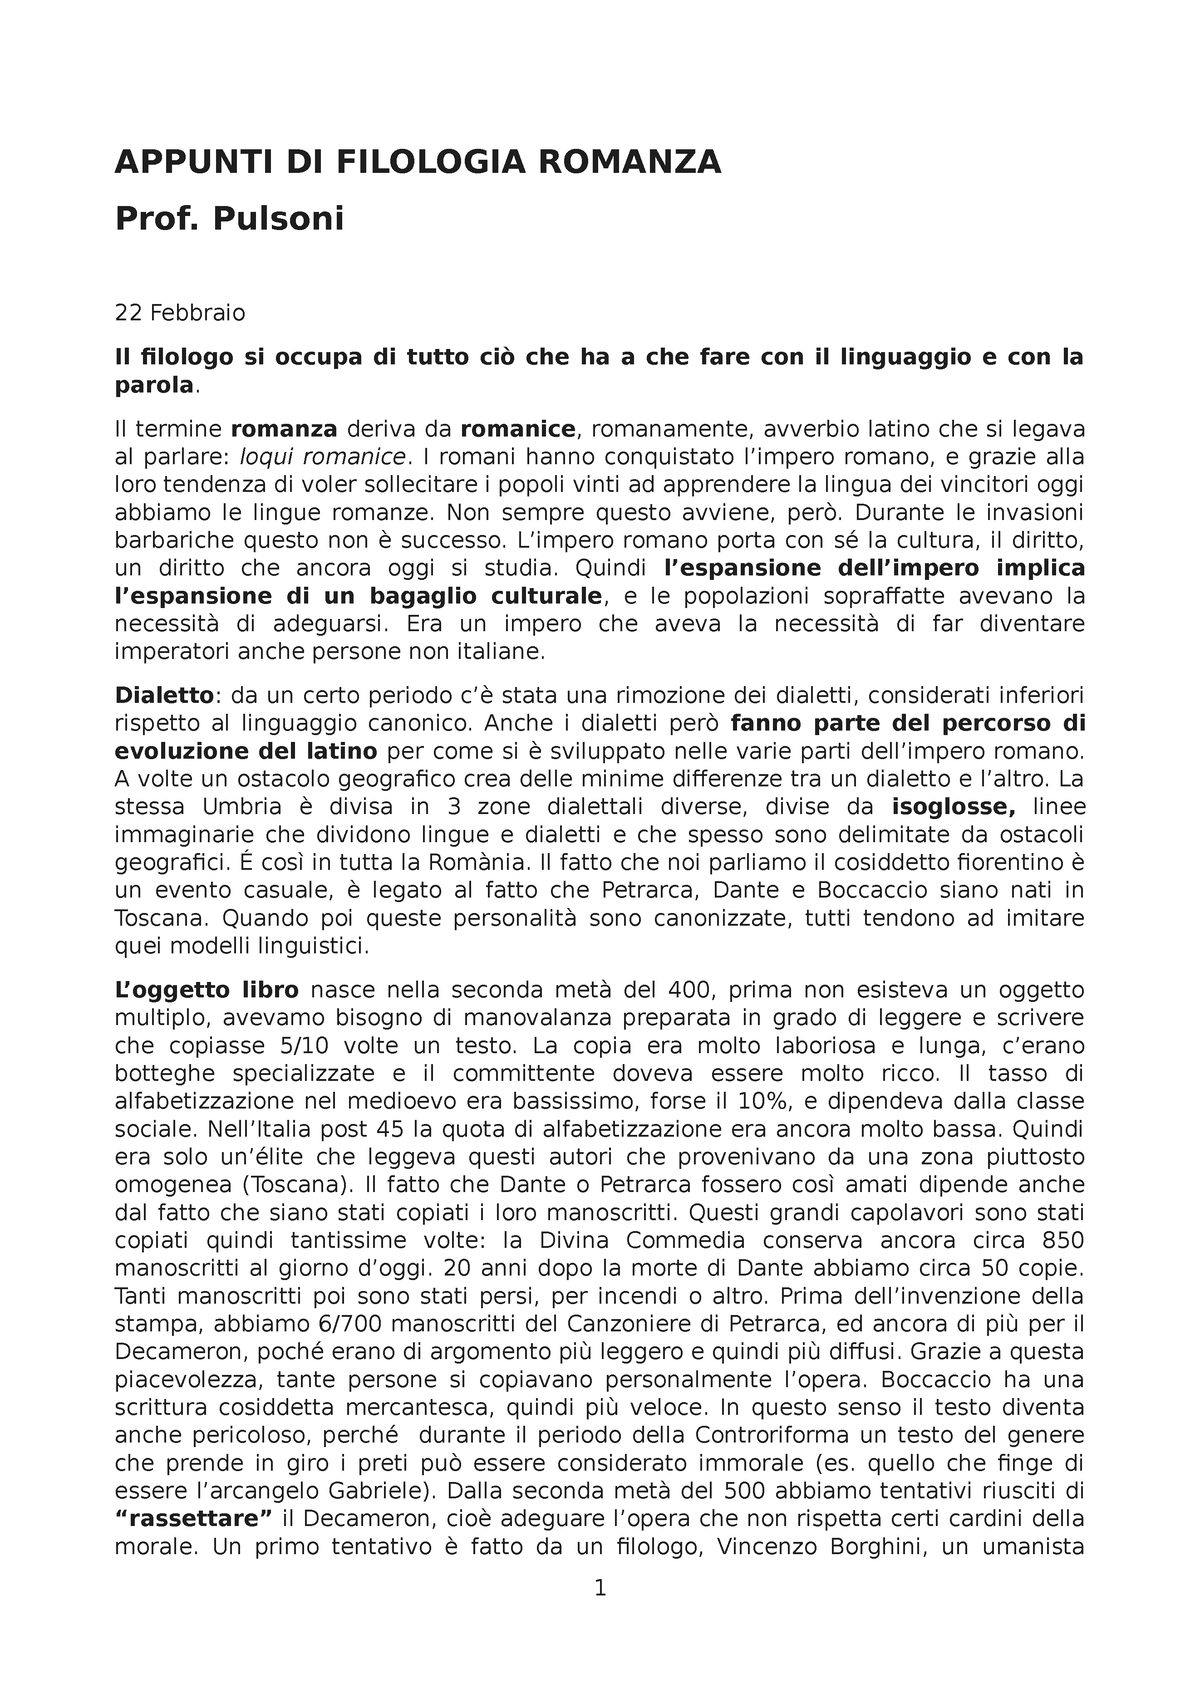 Appunti filologia romanza - APPUNTI DI FILOLOGIA ROMANZA Prof. Pulsoni 22  Febbraio Il filologo si - Studocu